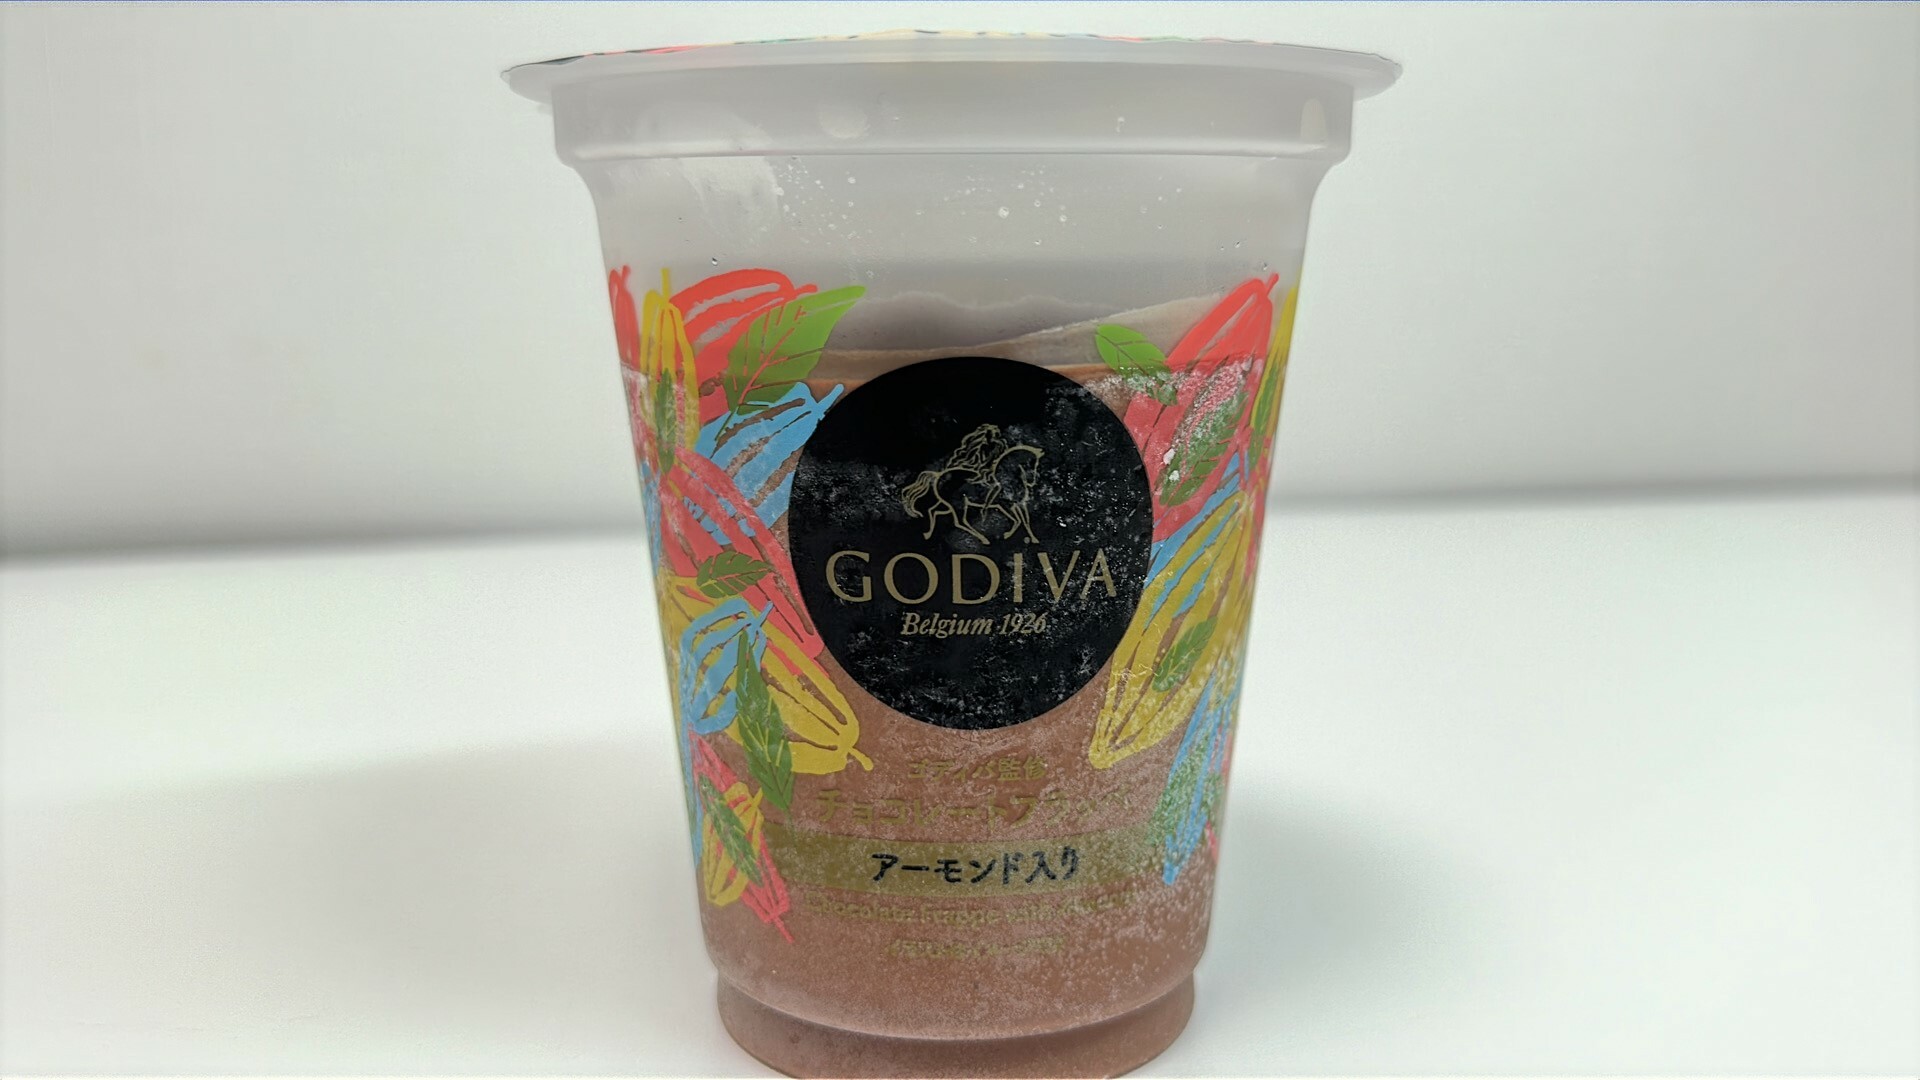 新発売のファミマ「ゴディバ監修チョコレートフラッペ」はお洒落な雰囲気のカップ